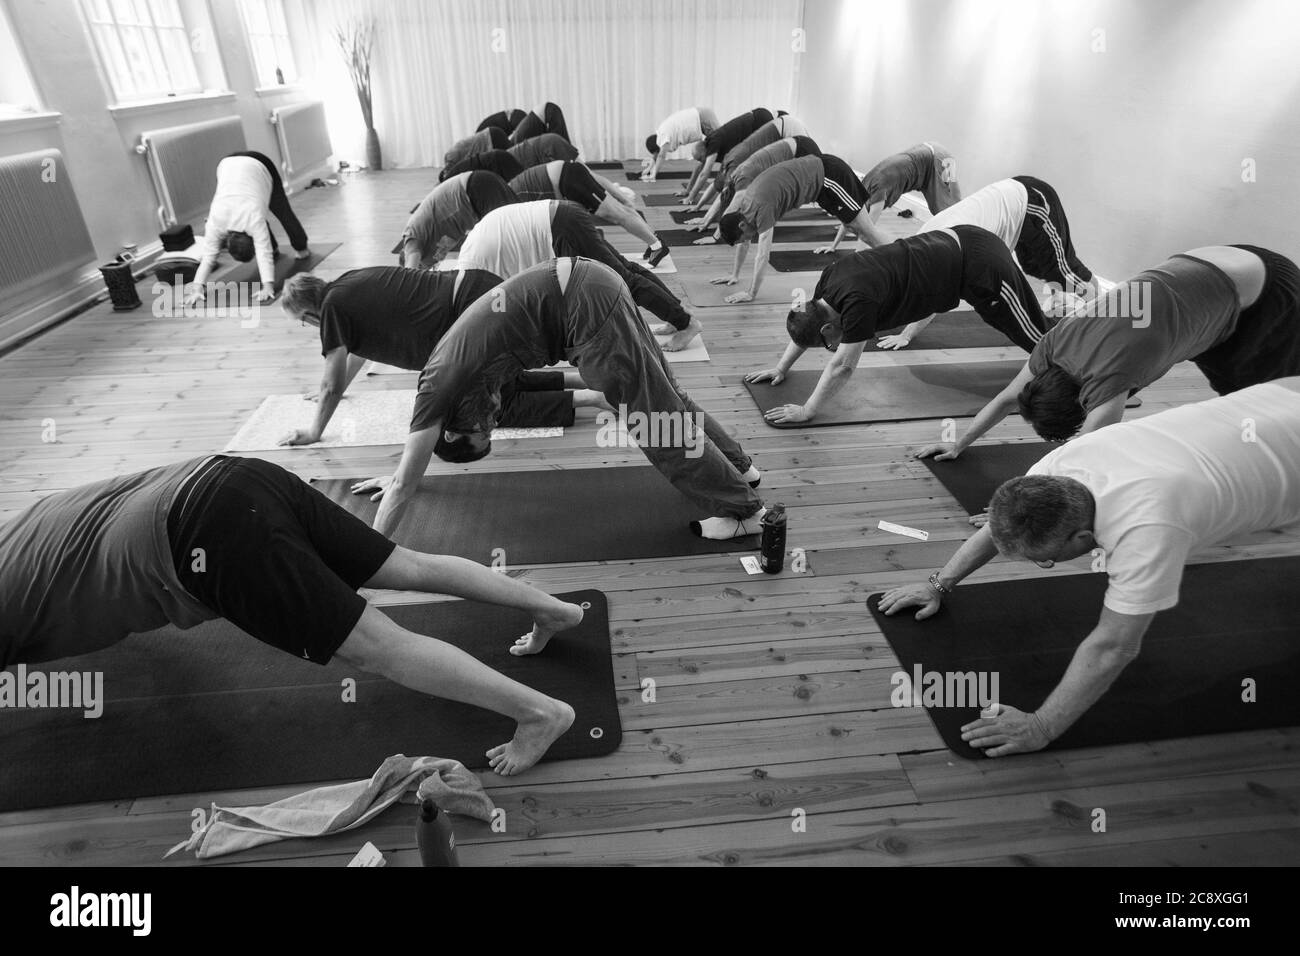 Yoga für steife Männer. Yoga ist eine Gruppe von physischen, mentalen und spirituellen Praktiken oder Disziplinen, die ihren Ursprung im alten Indien haben. Yoga ist eine der sechs Āstika (orthodoxen) Schulen der hinduistischen philosophischen Traditionen. Foto Jeppe Gustafsson Stockfoto